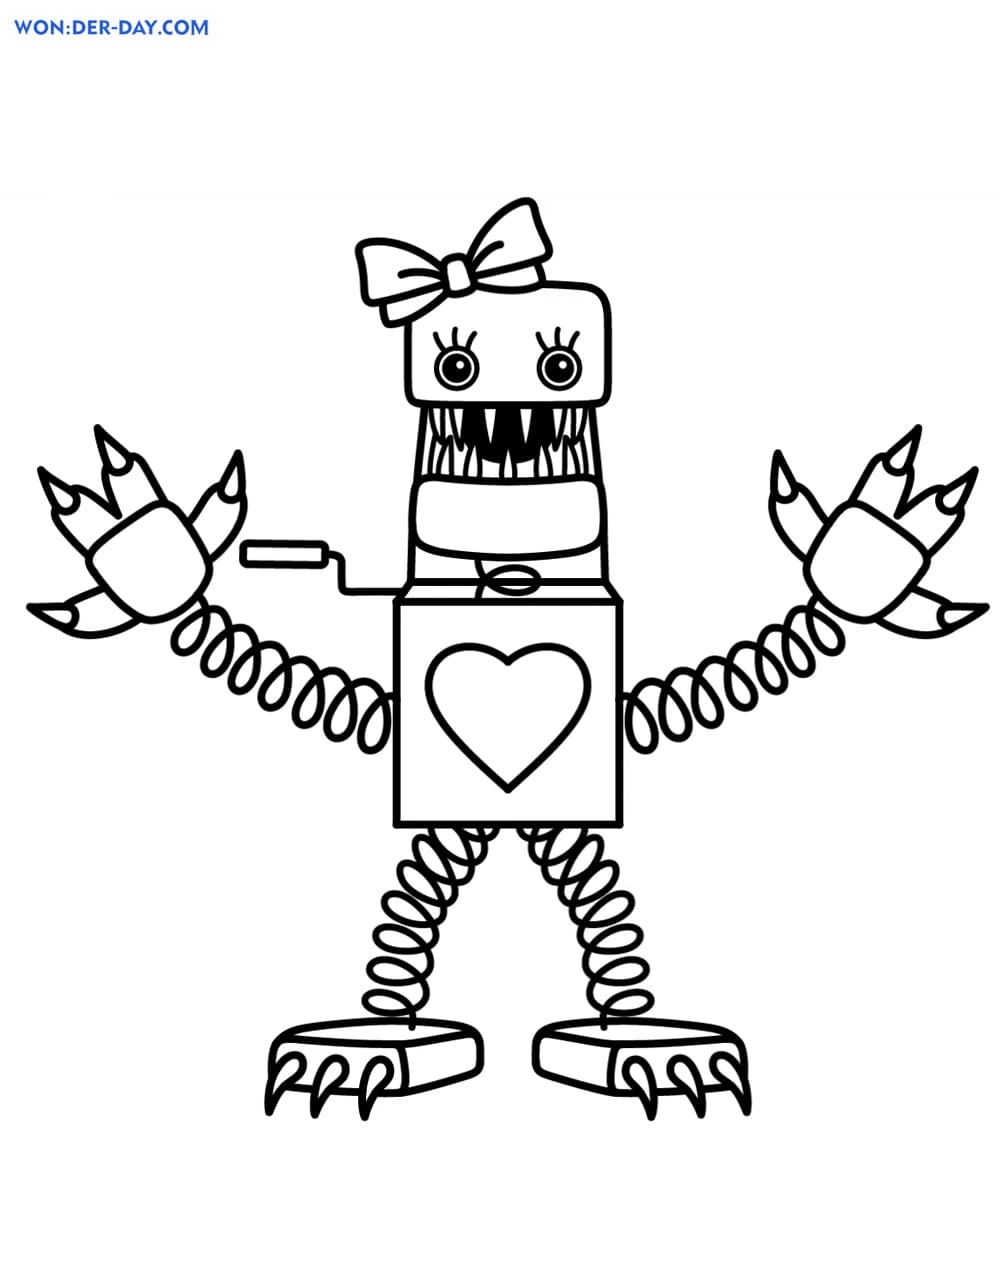 Desenhos de Boxy Boo de Poppy Playtime para Colorir e Imprimir